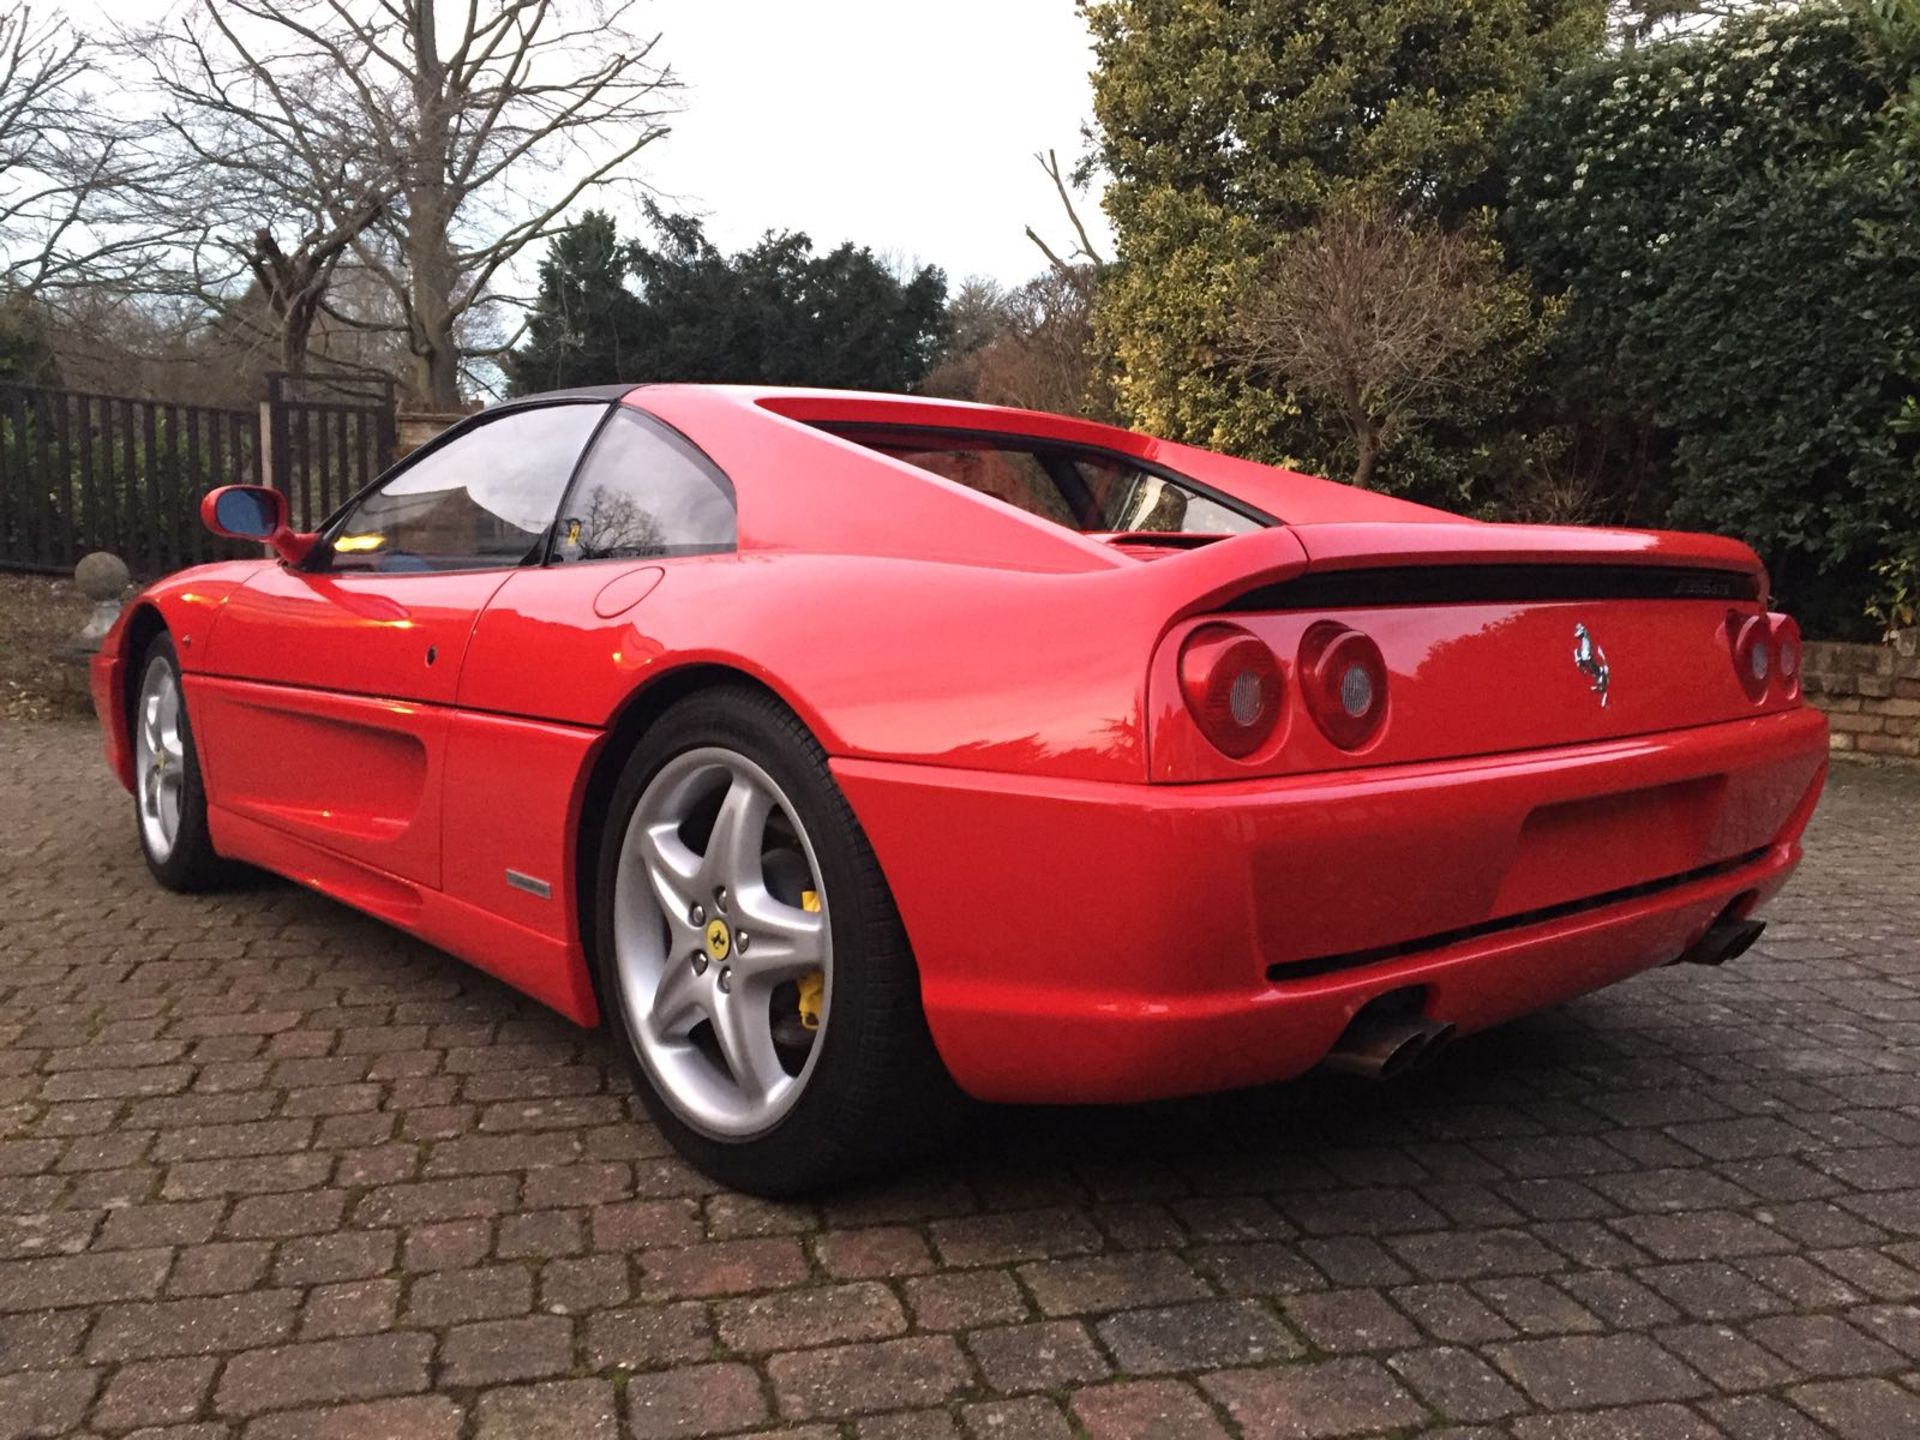 RHD 1996 Ferrari 355 GTS (Rare Manual Targa) - Image 11 of 40